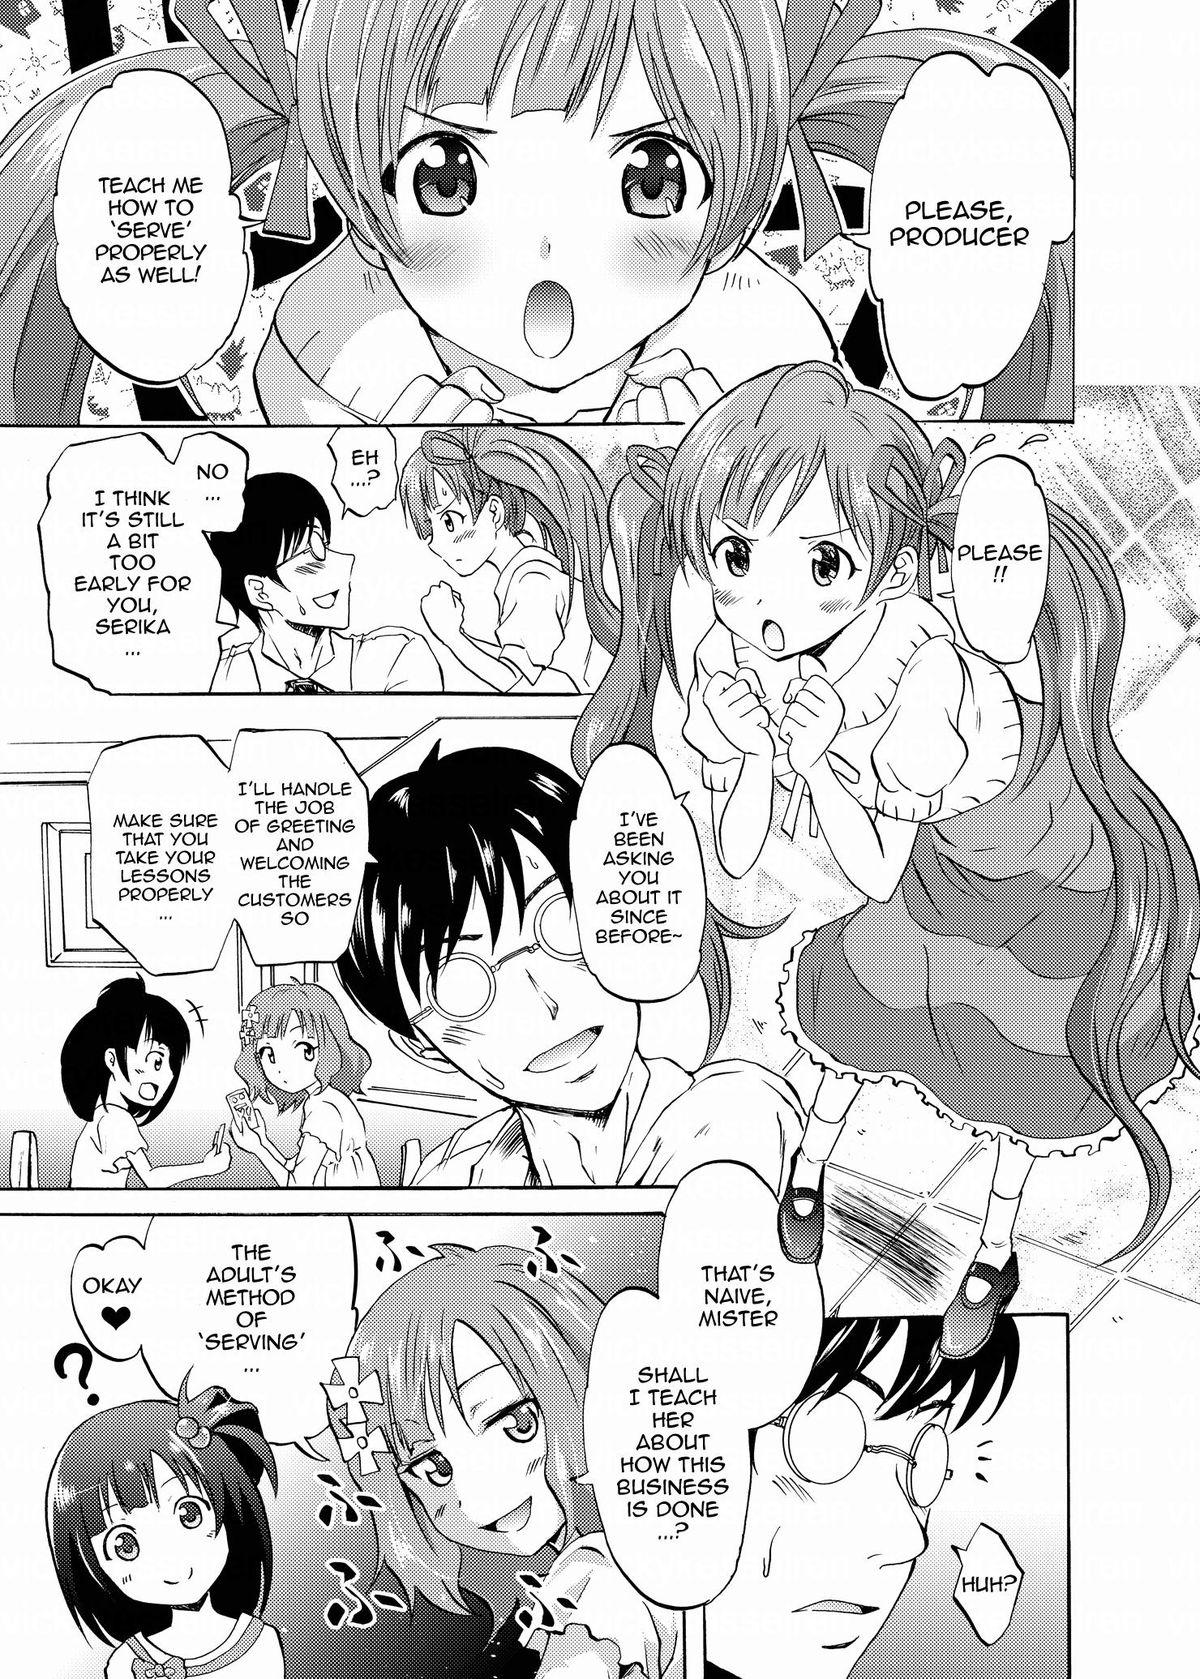 Puto Serika to Iku to Momoko no Otona no "Settai" Gassyuku | Serika, Iku, and Momoko's Adult "Entertainment" Camp - The idolmaster Gozada - Page 2